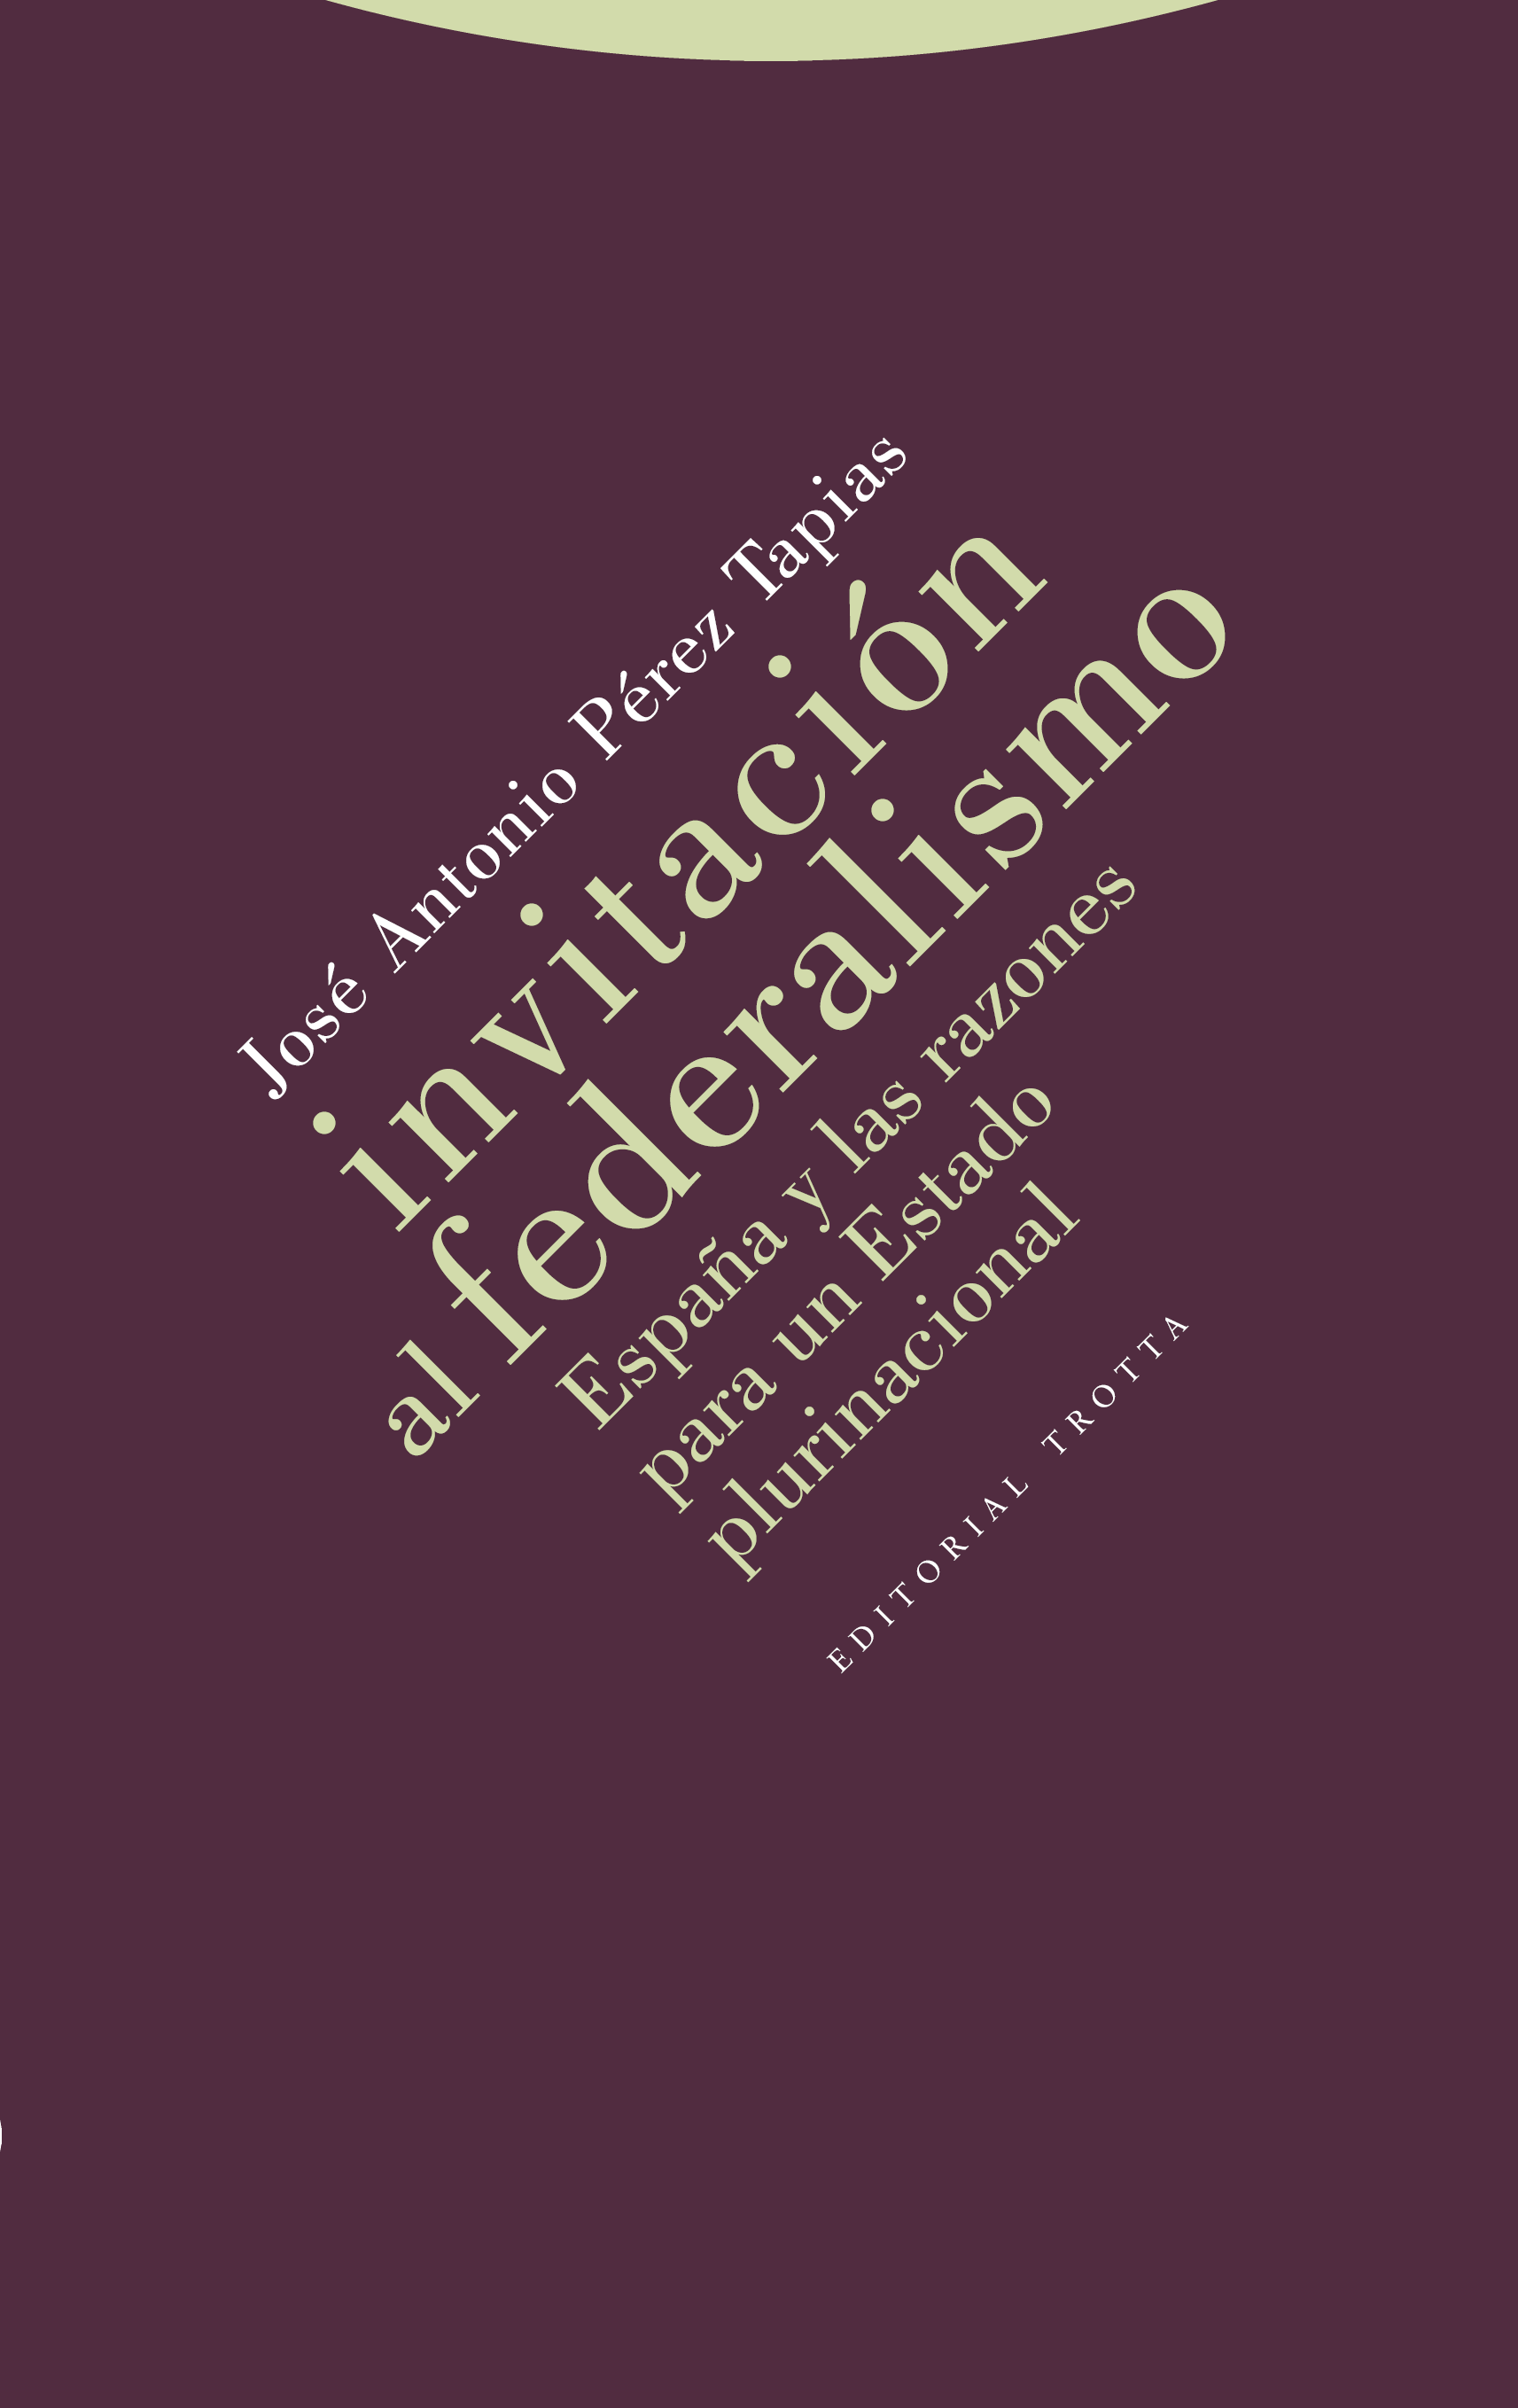 Invitación al federalismo